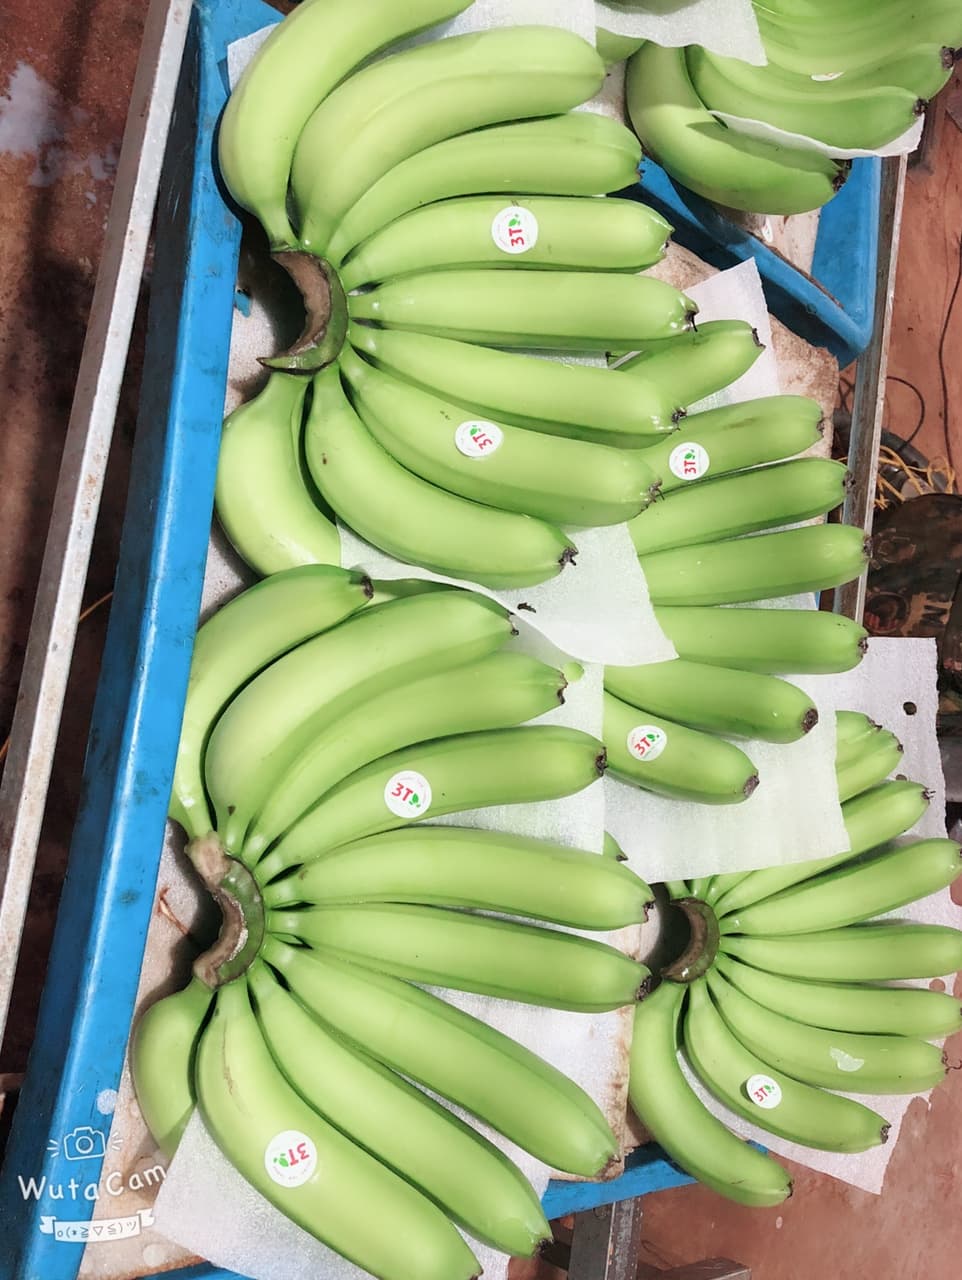 Fresh banana